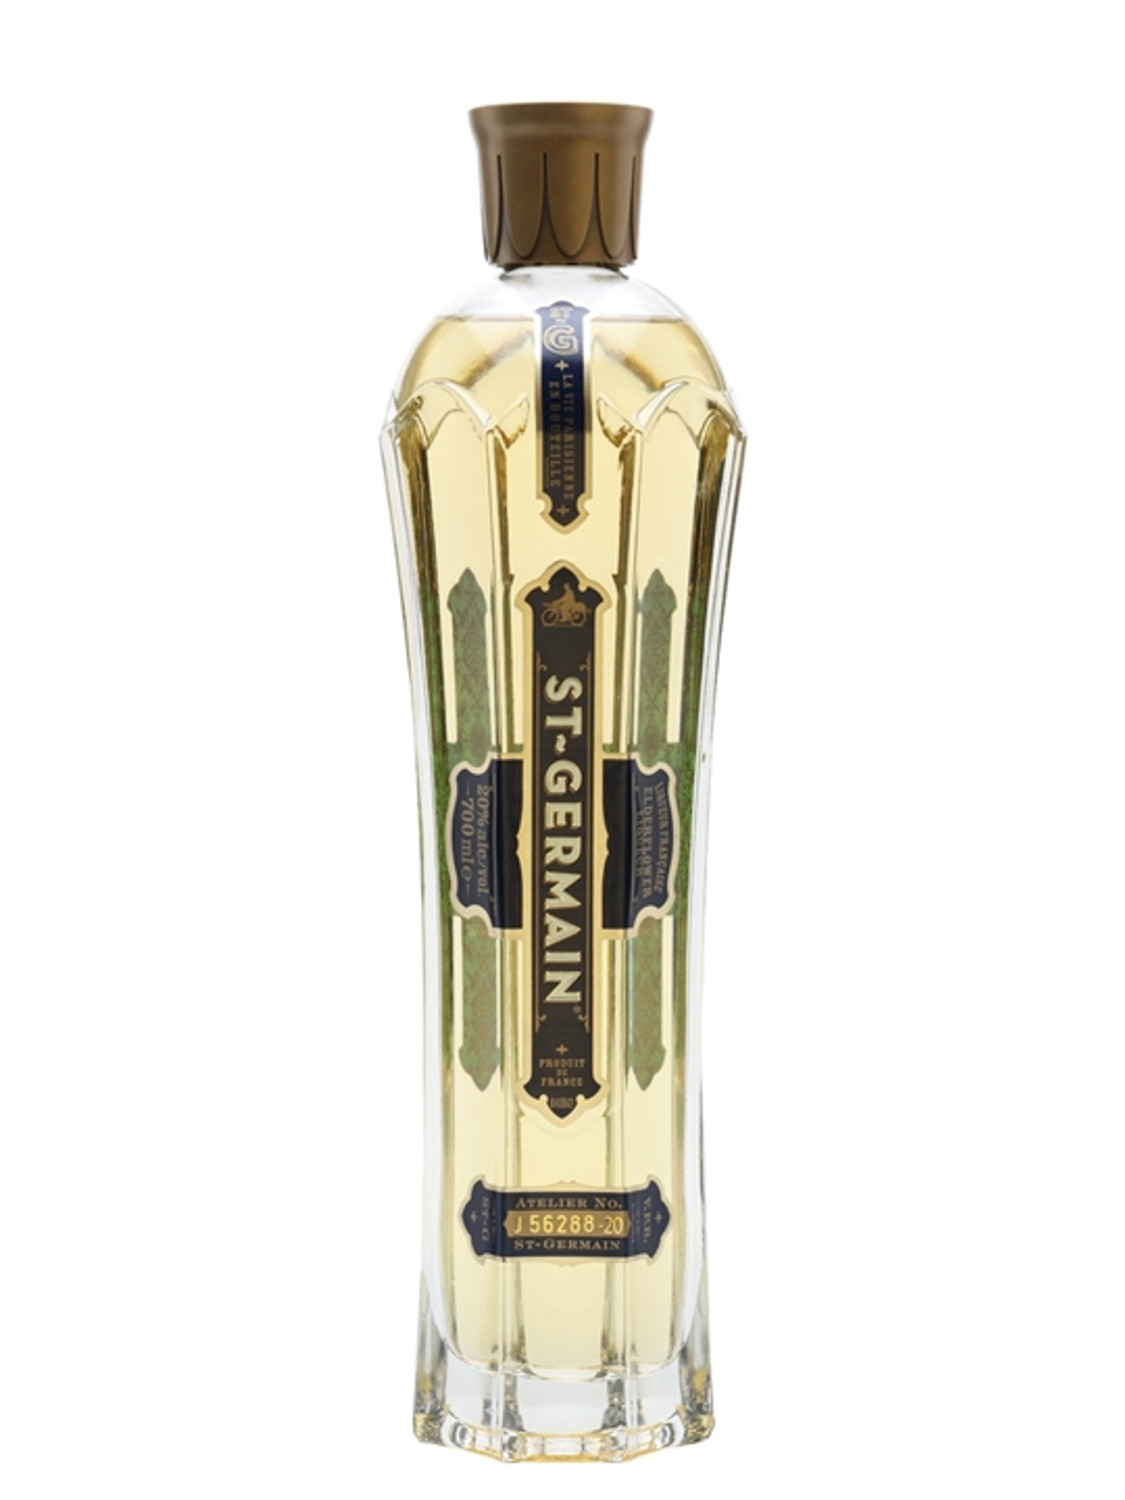 St – Germain Elderflower Liqueur Review – Drink Spirits